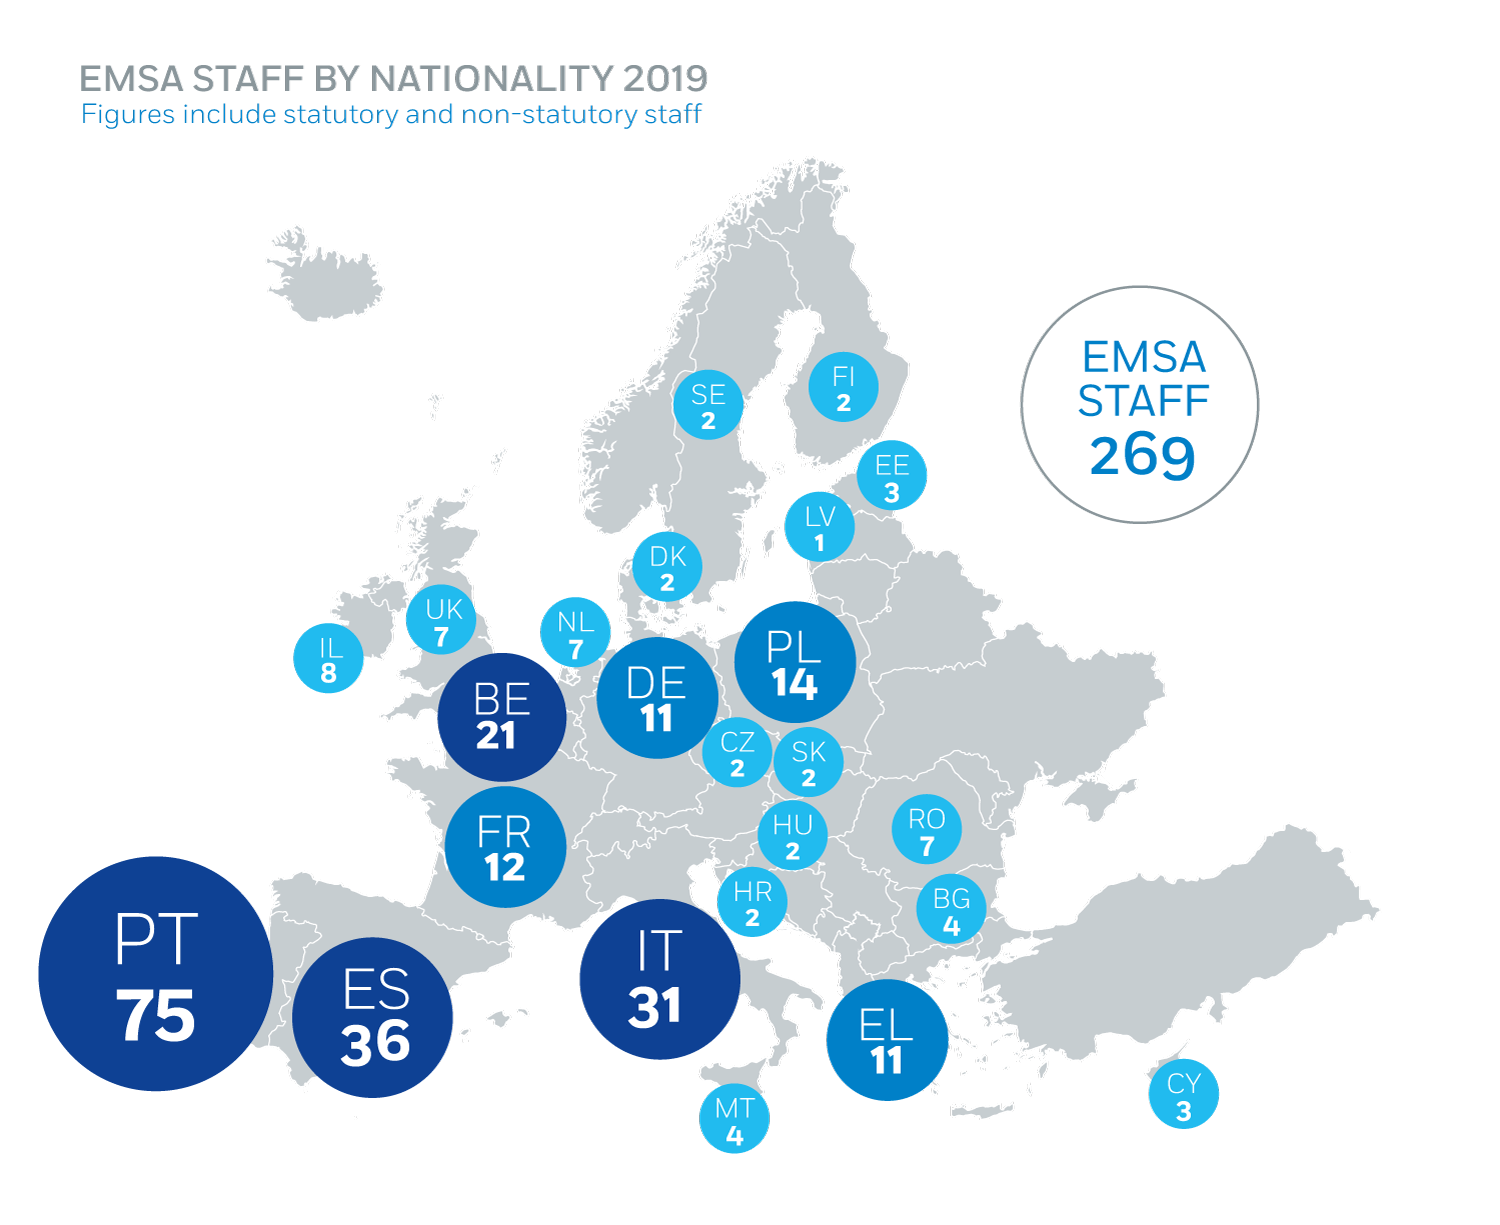 EMSA Staff by Nationality 2019 Image 1